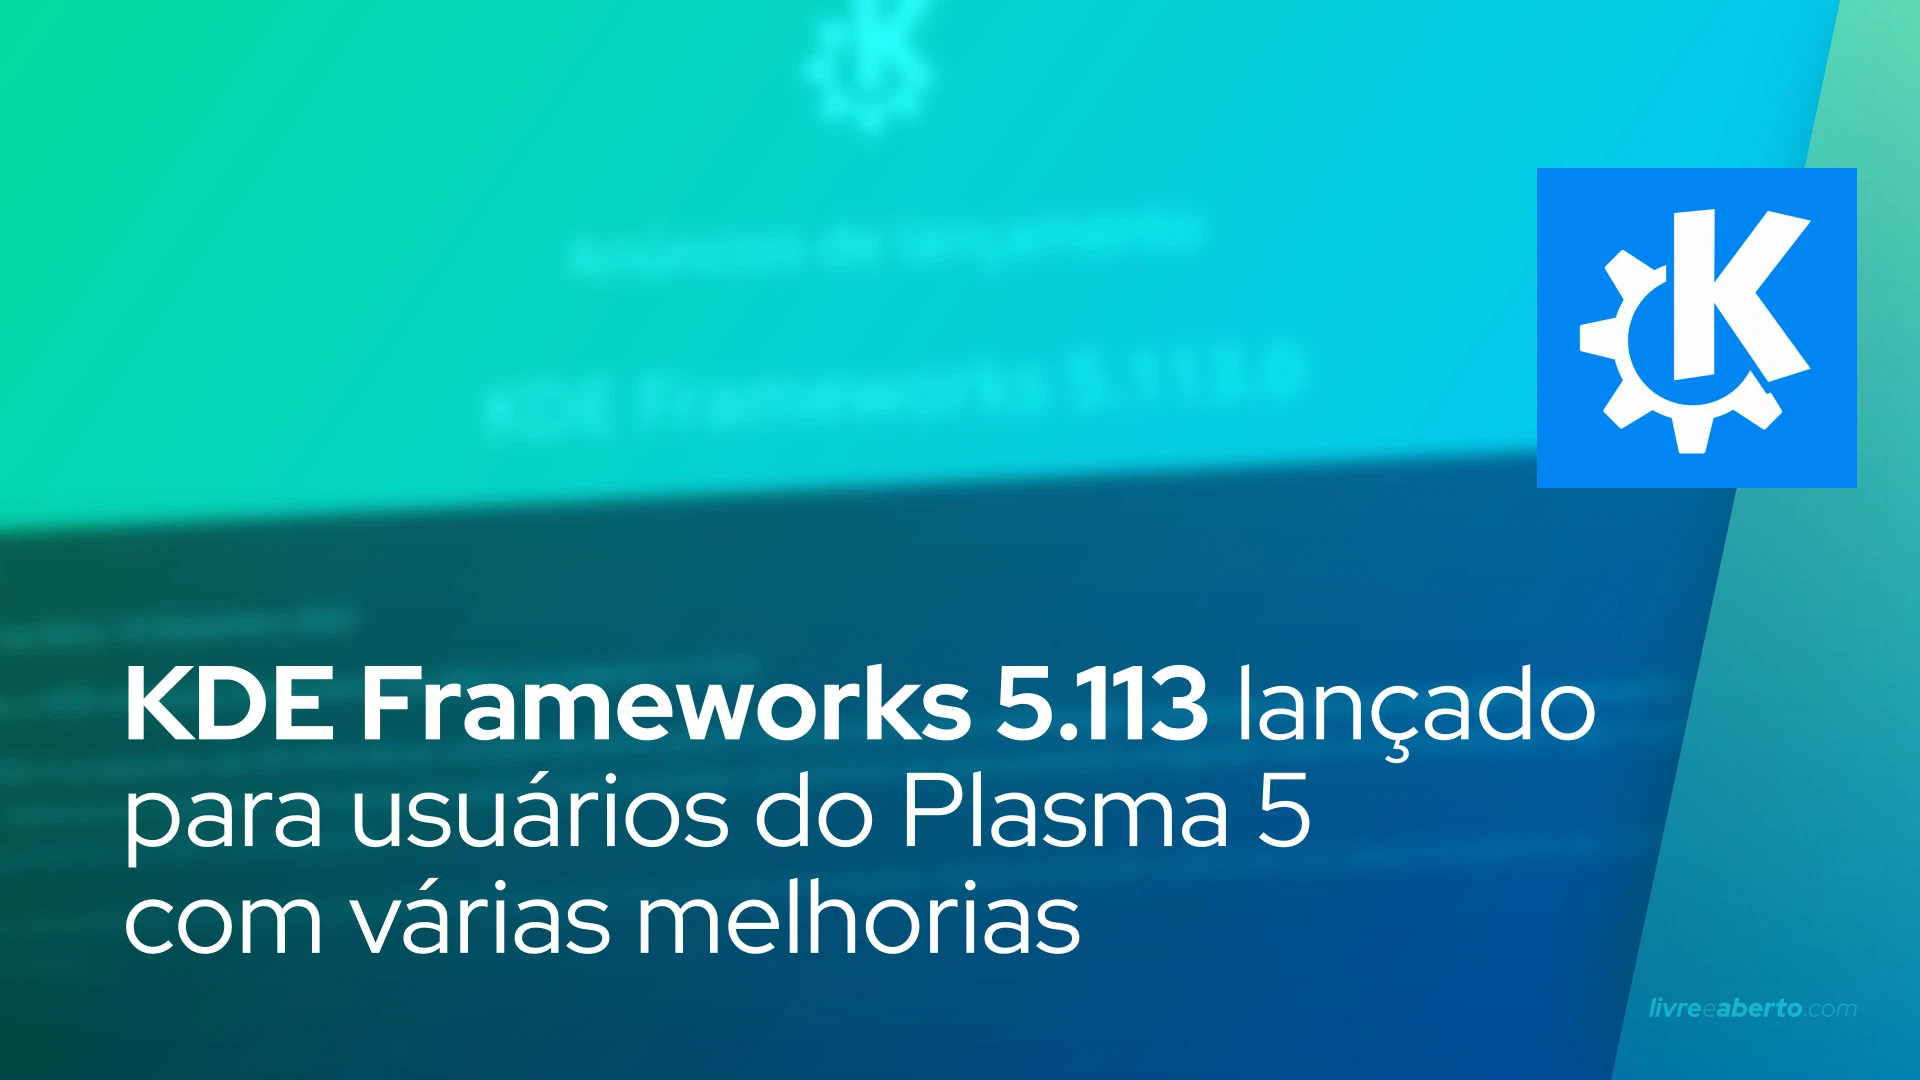 KDE Frameworks 5.113 lançado para usuários do Plasma 5 com várias melhorias